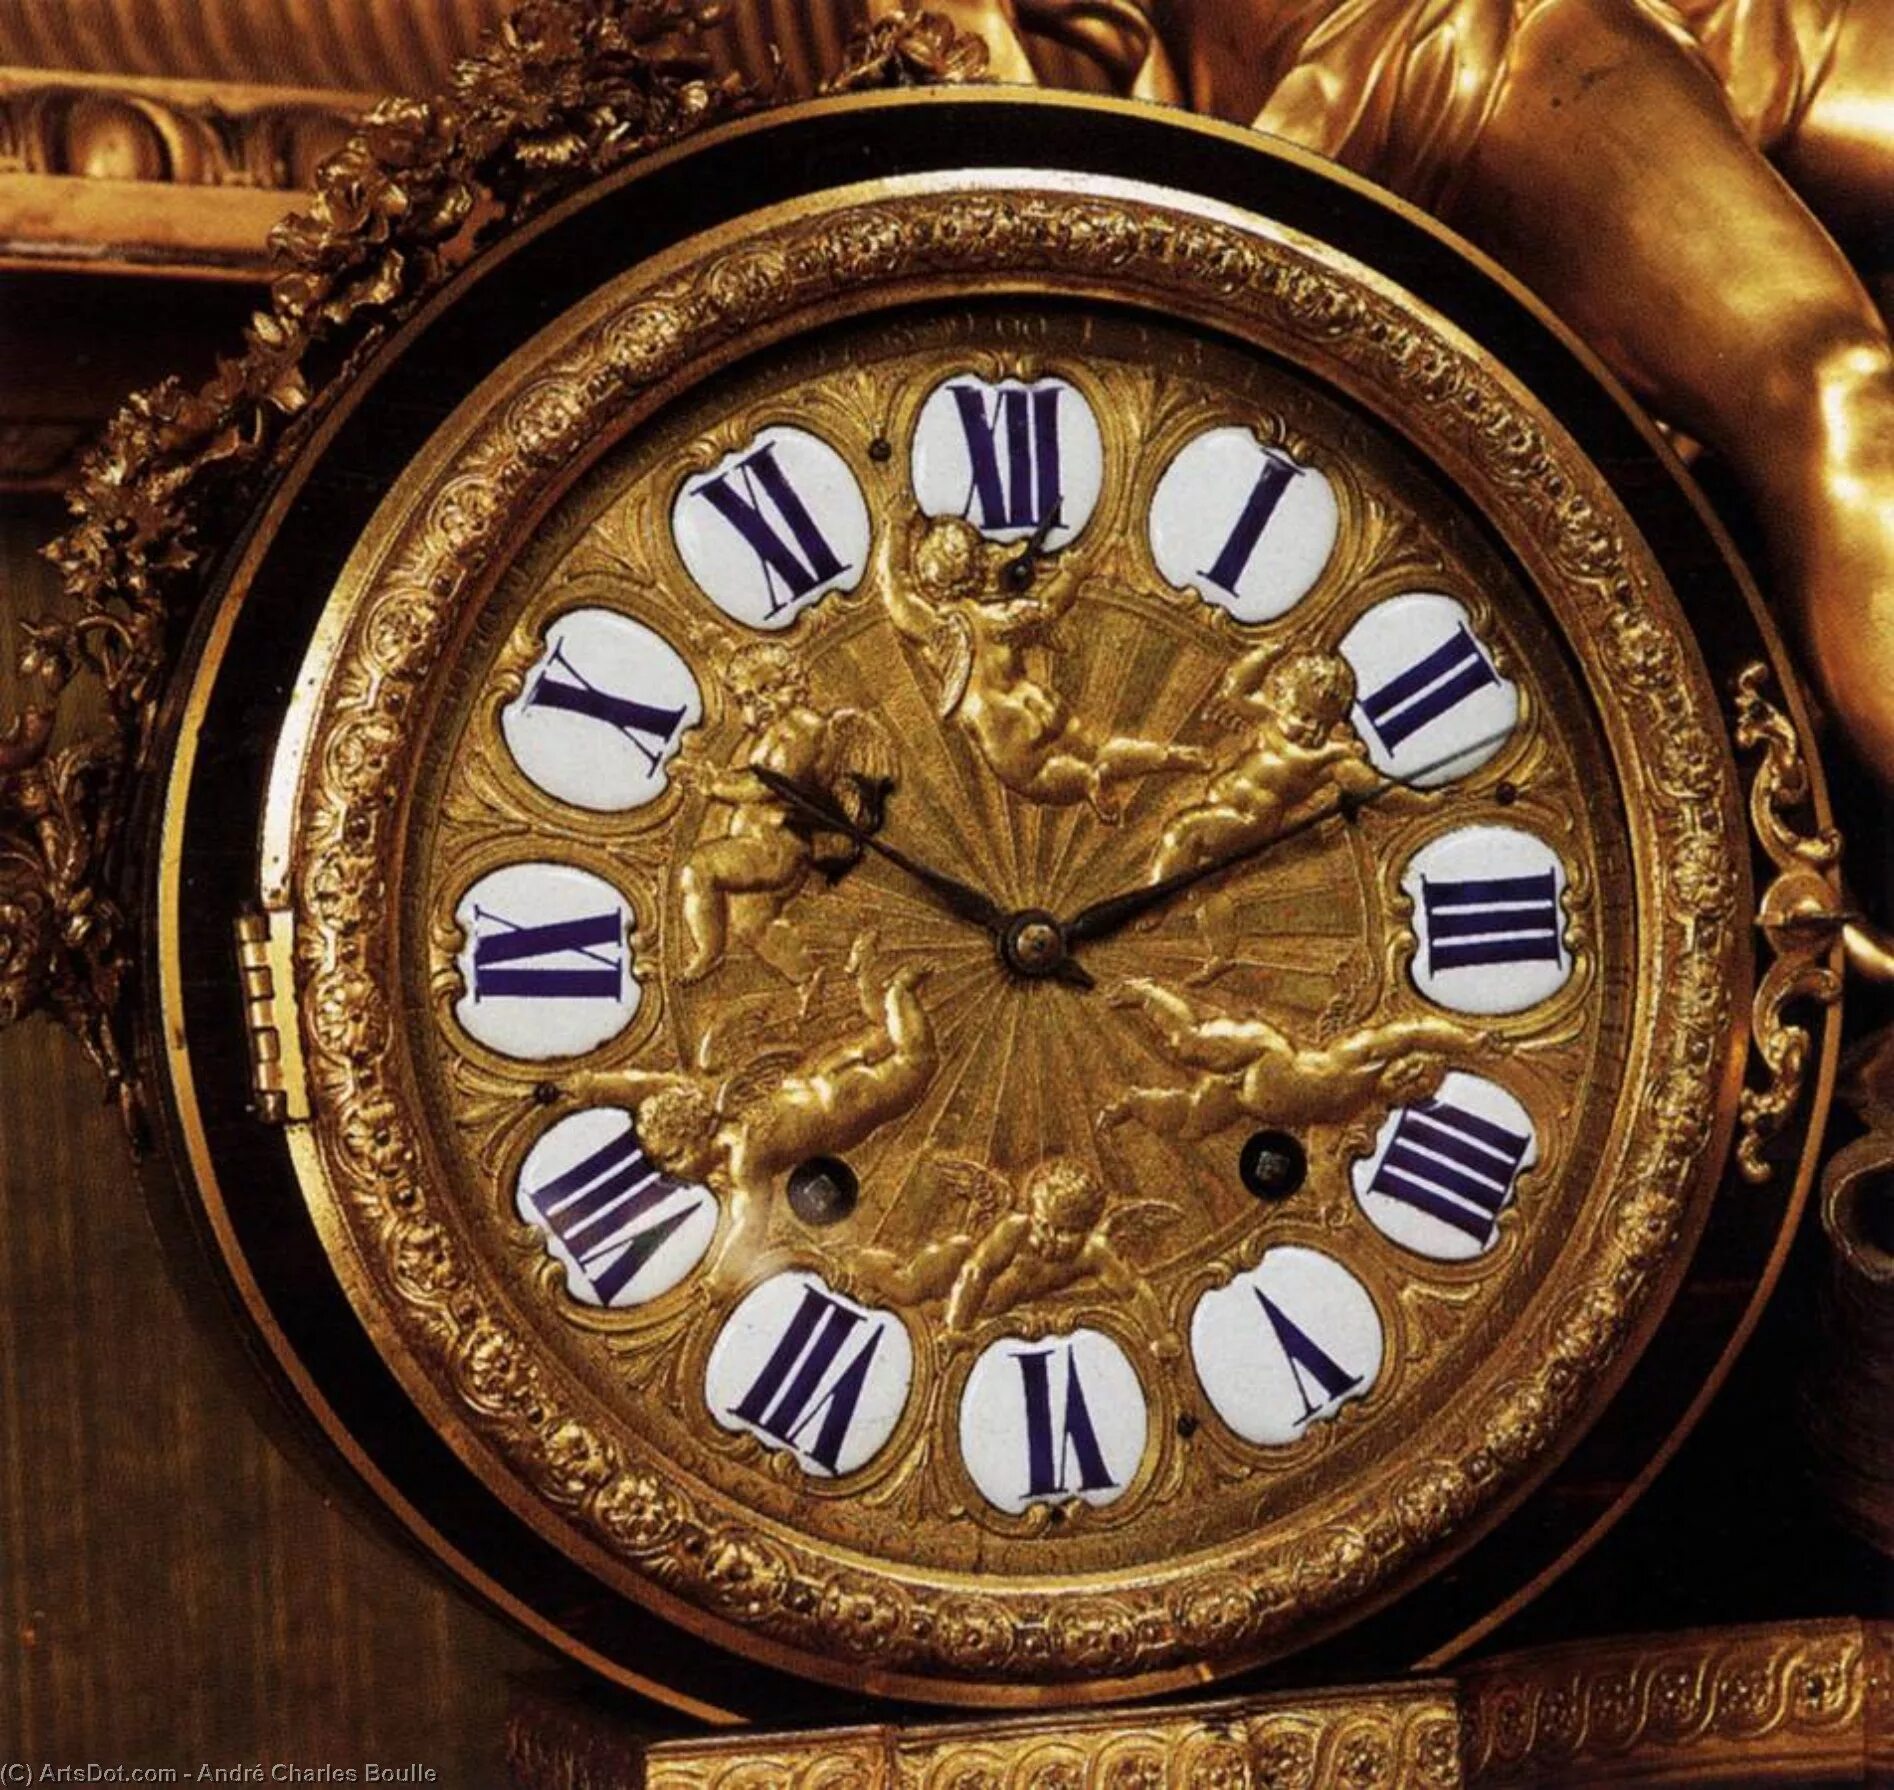 Часы. André-Charles Boulle, часы. Старинные часы. Красивые старинные часы. Картина часов.